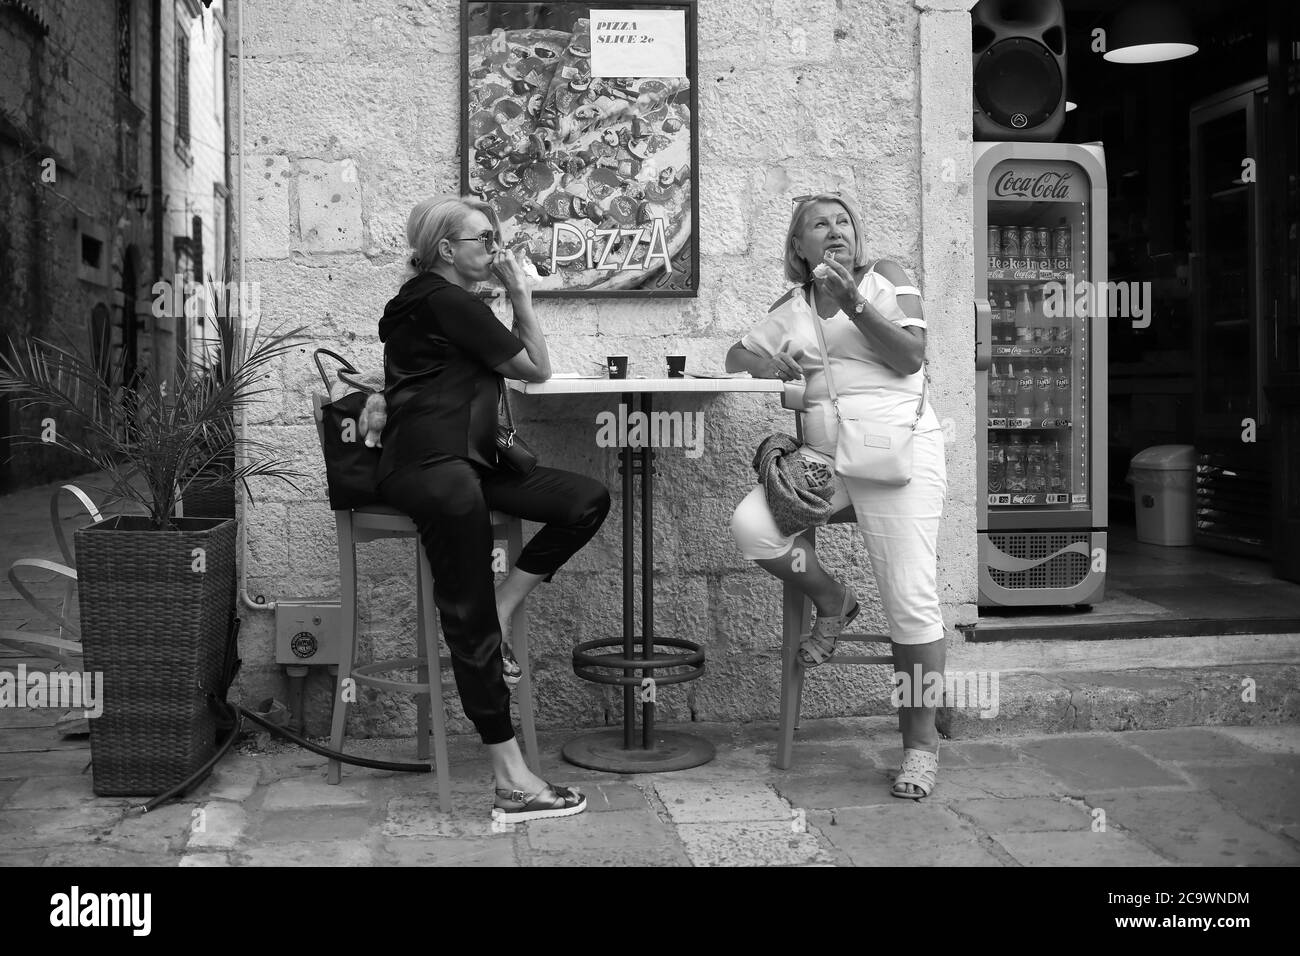 Monténégro, 22 septembre 2019: Scène de rue avec deux femmes ayant un en-cas et un café à un café extérieur dans la vieille ville de Kotor (B/W) Banque D'Images